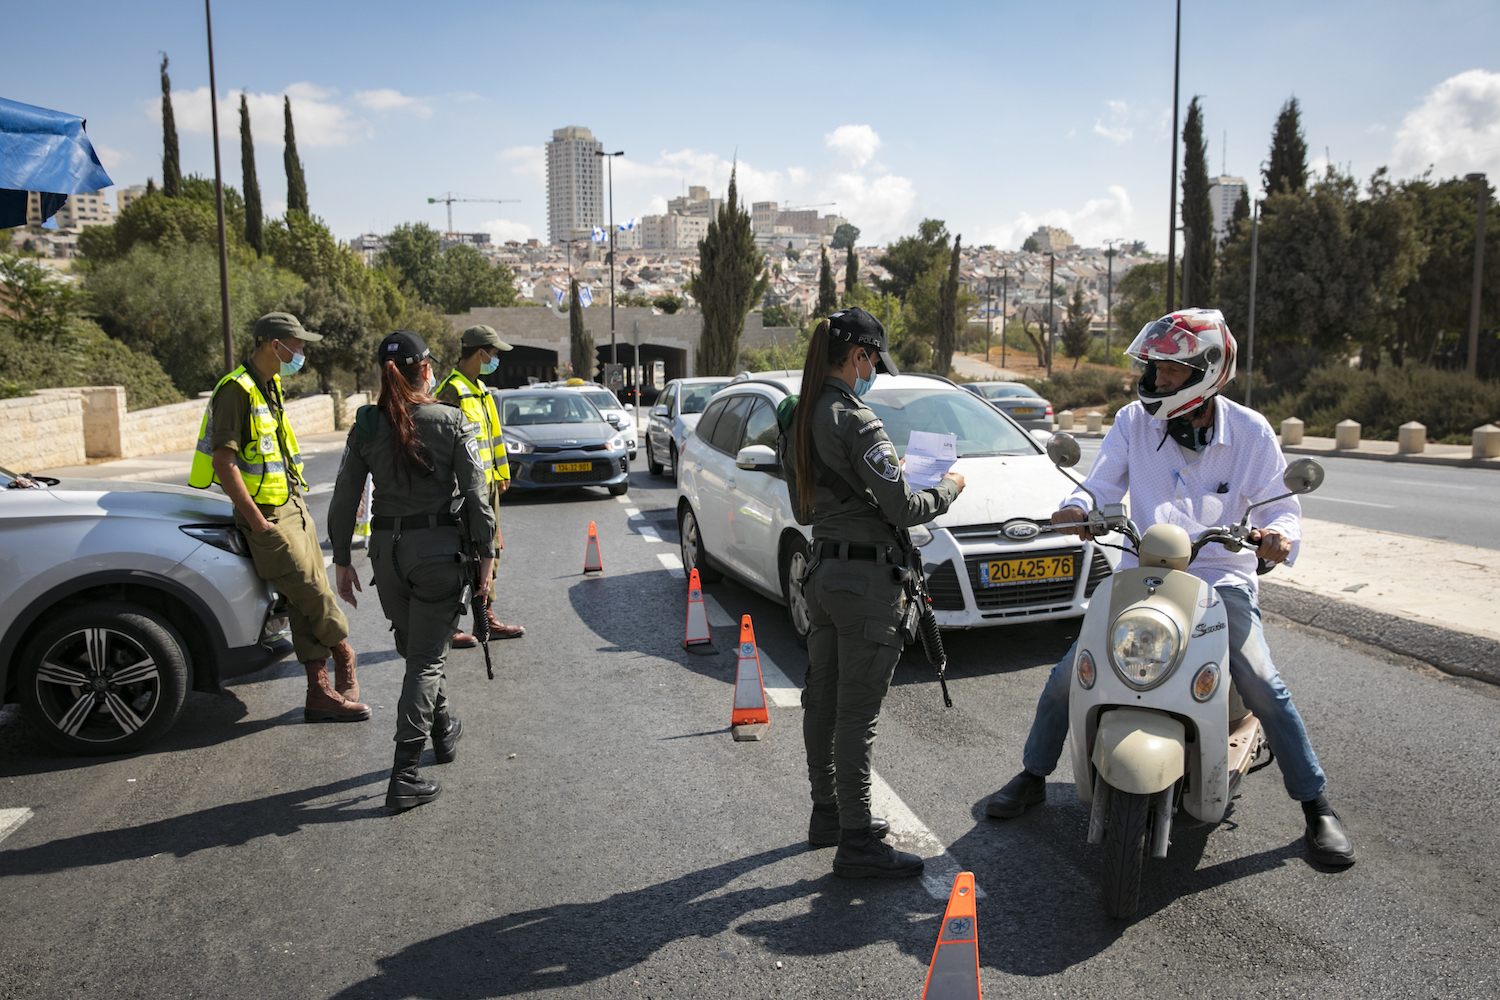 "היה צריך להימנע מסקוריטיזציה בישראל מהרגע הראשון". חיילים ושוטרים במחסום קורונה (אוליבייה פיטוסי / פלאש 90)